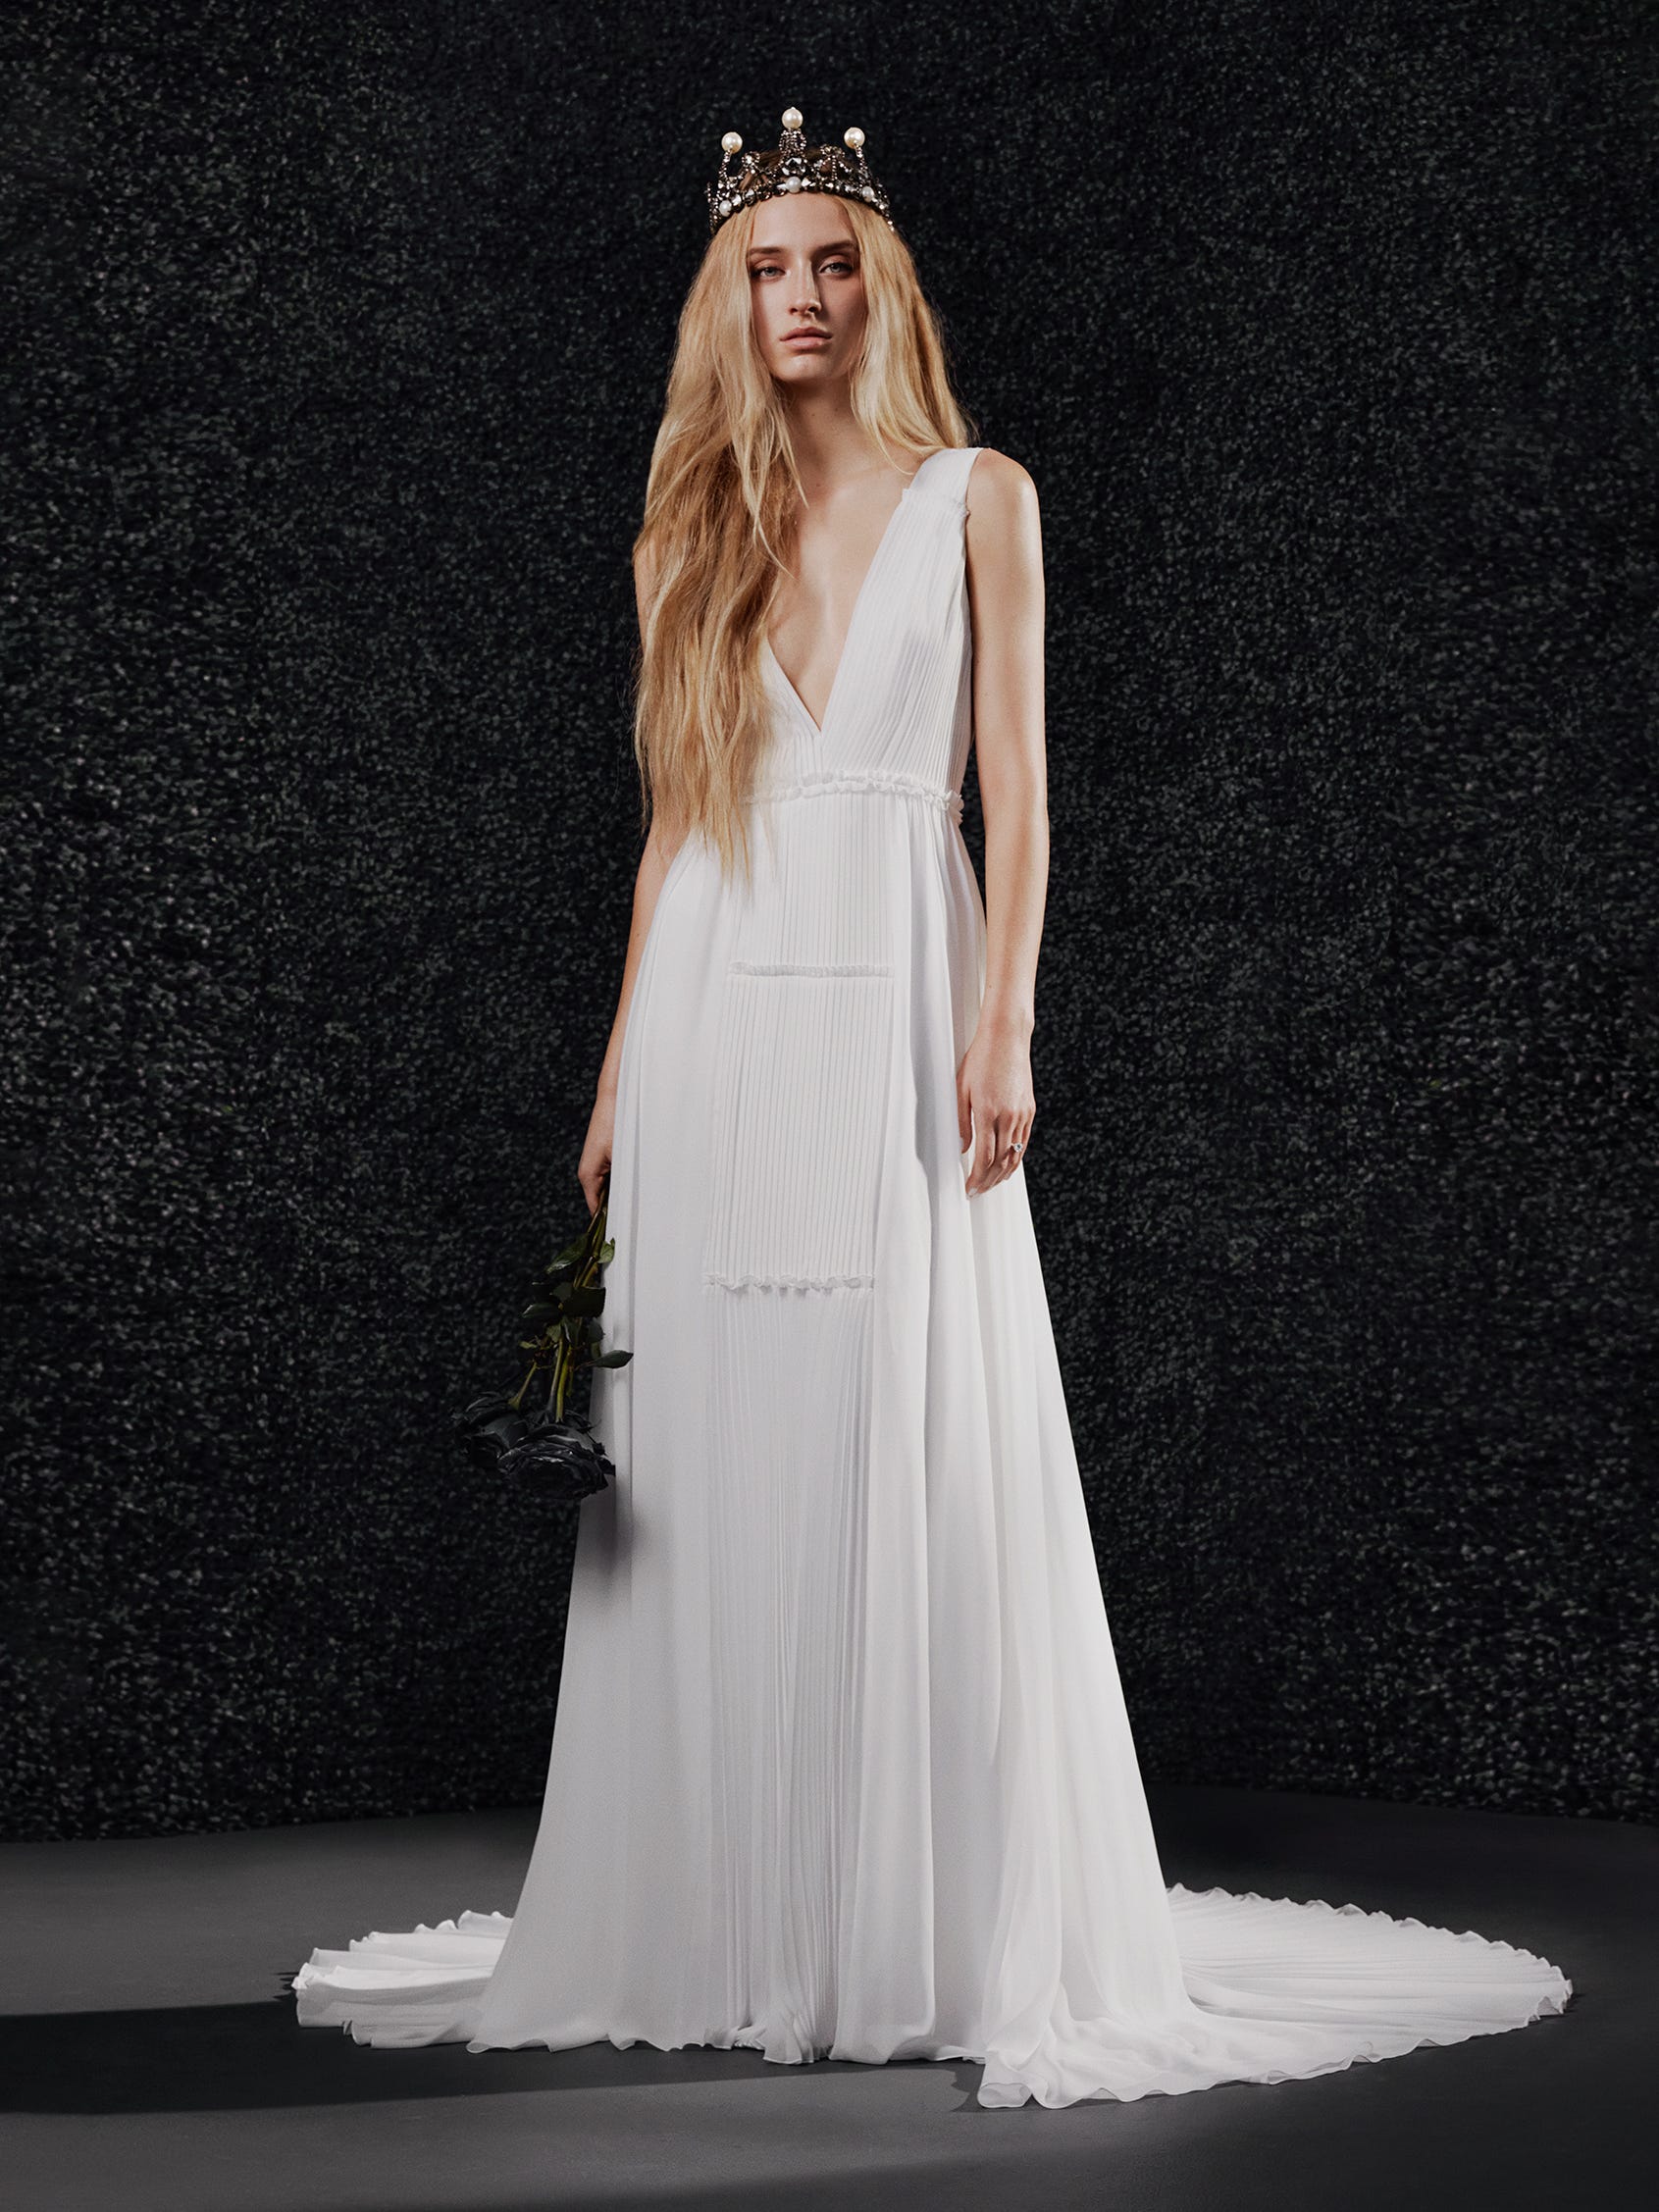 Vera Wang: seis criações que inovaram os vestidos de noiva - Harper's  Bazaar » Moda, beleza e estilo de vida em um só site